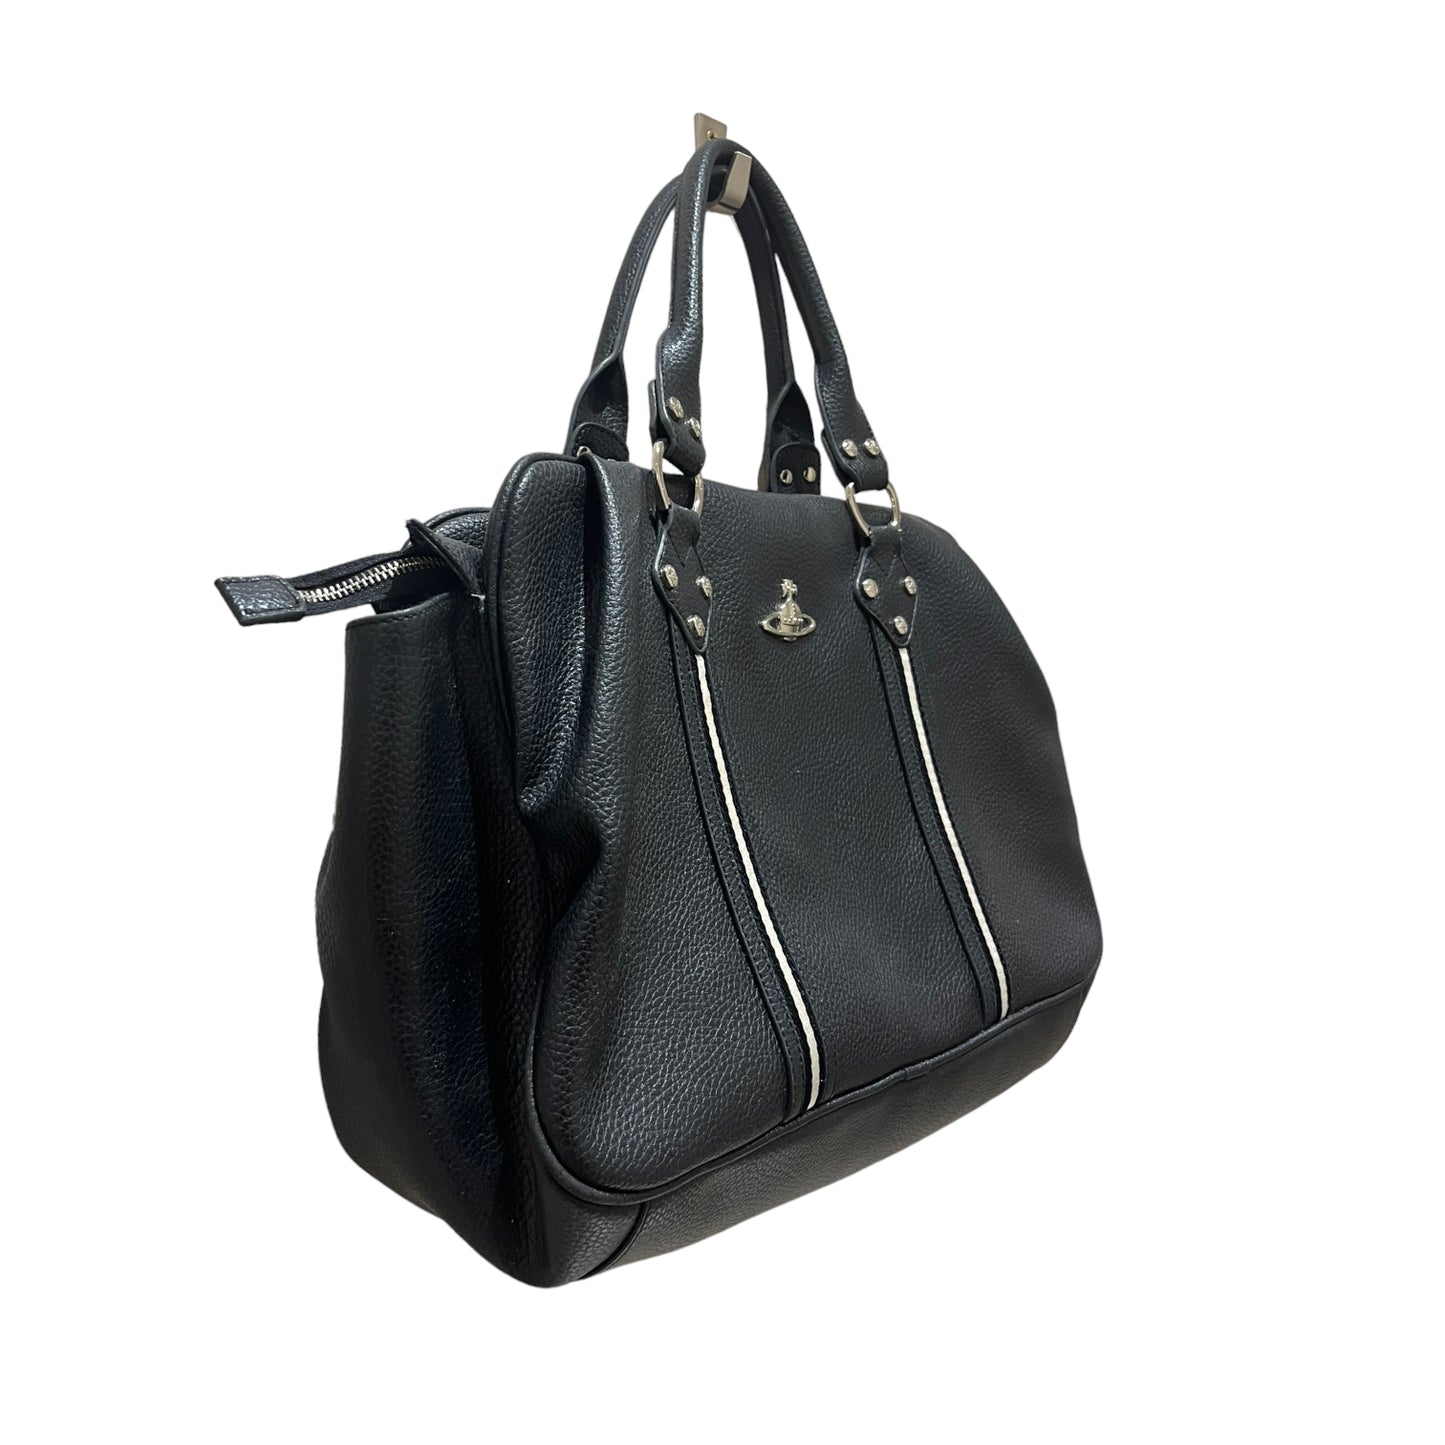 Vivienne Westwood Black Bag